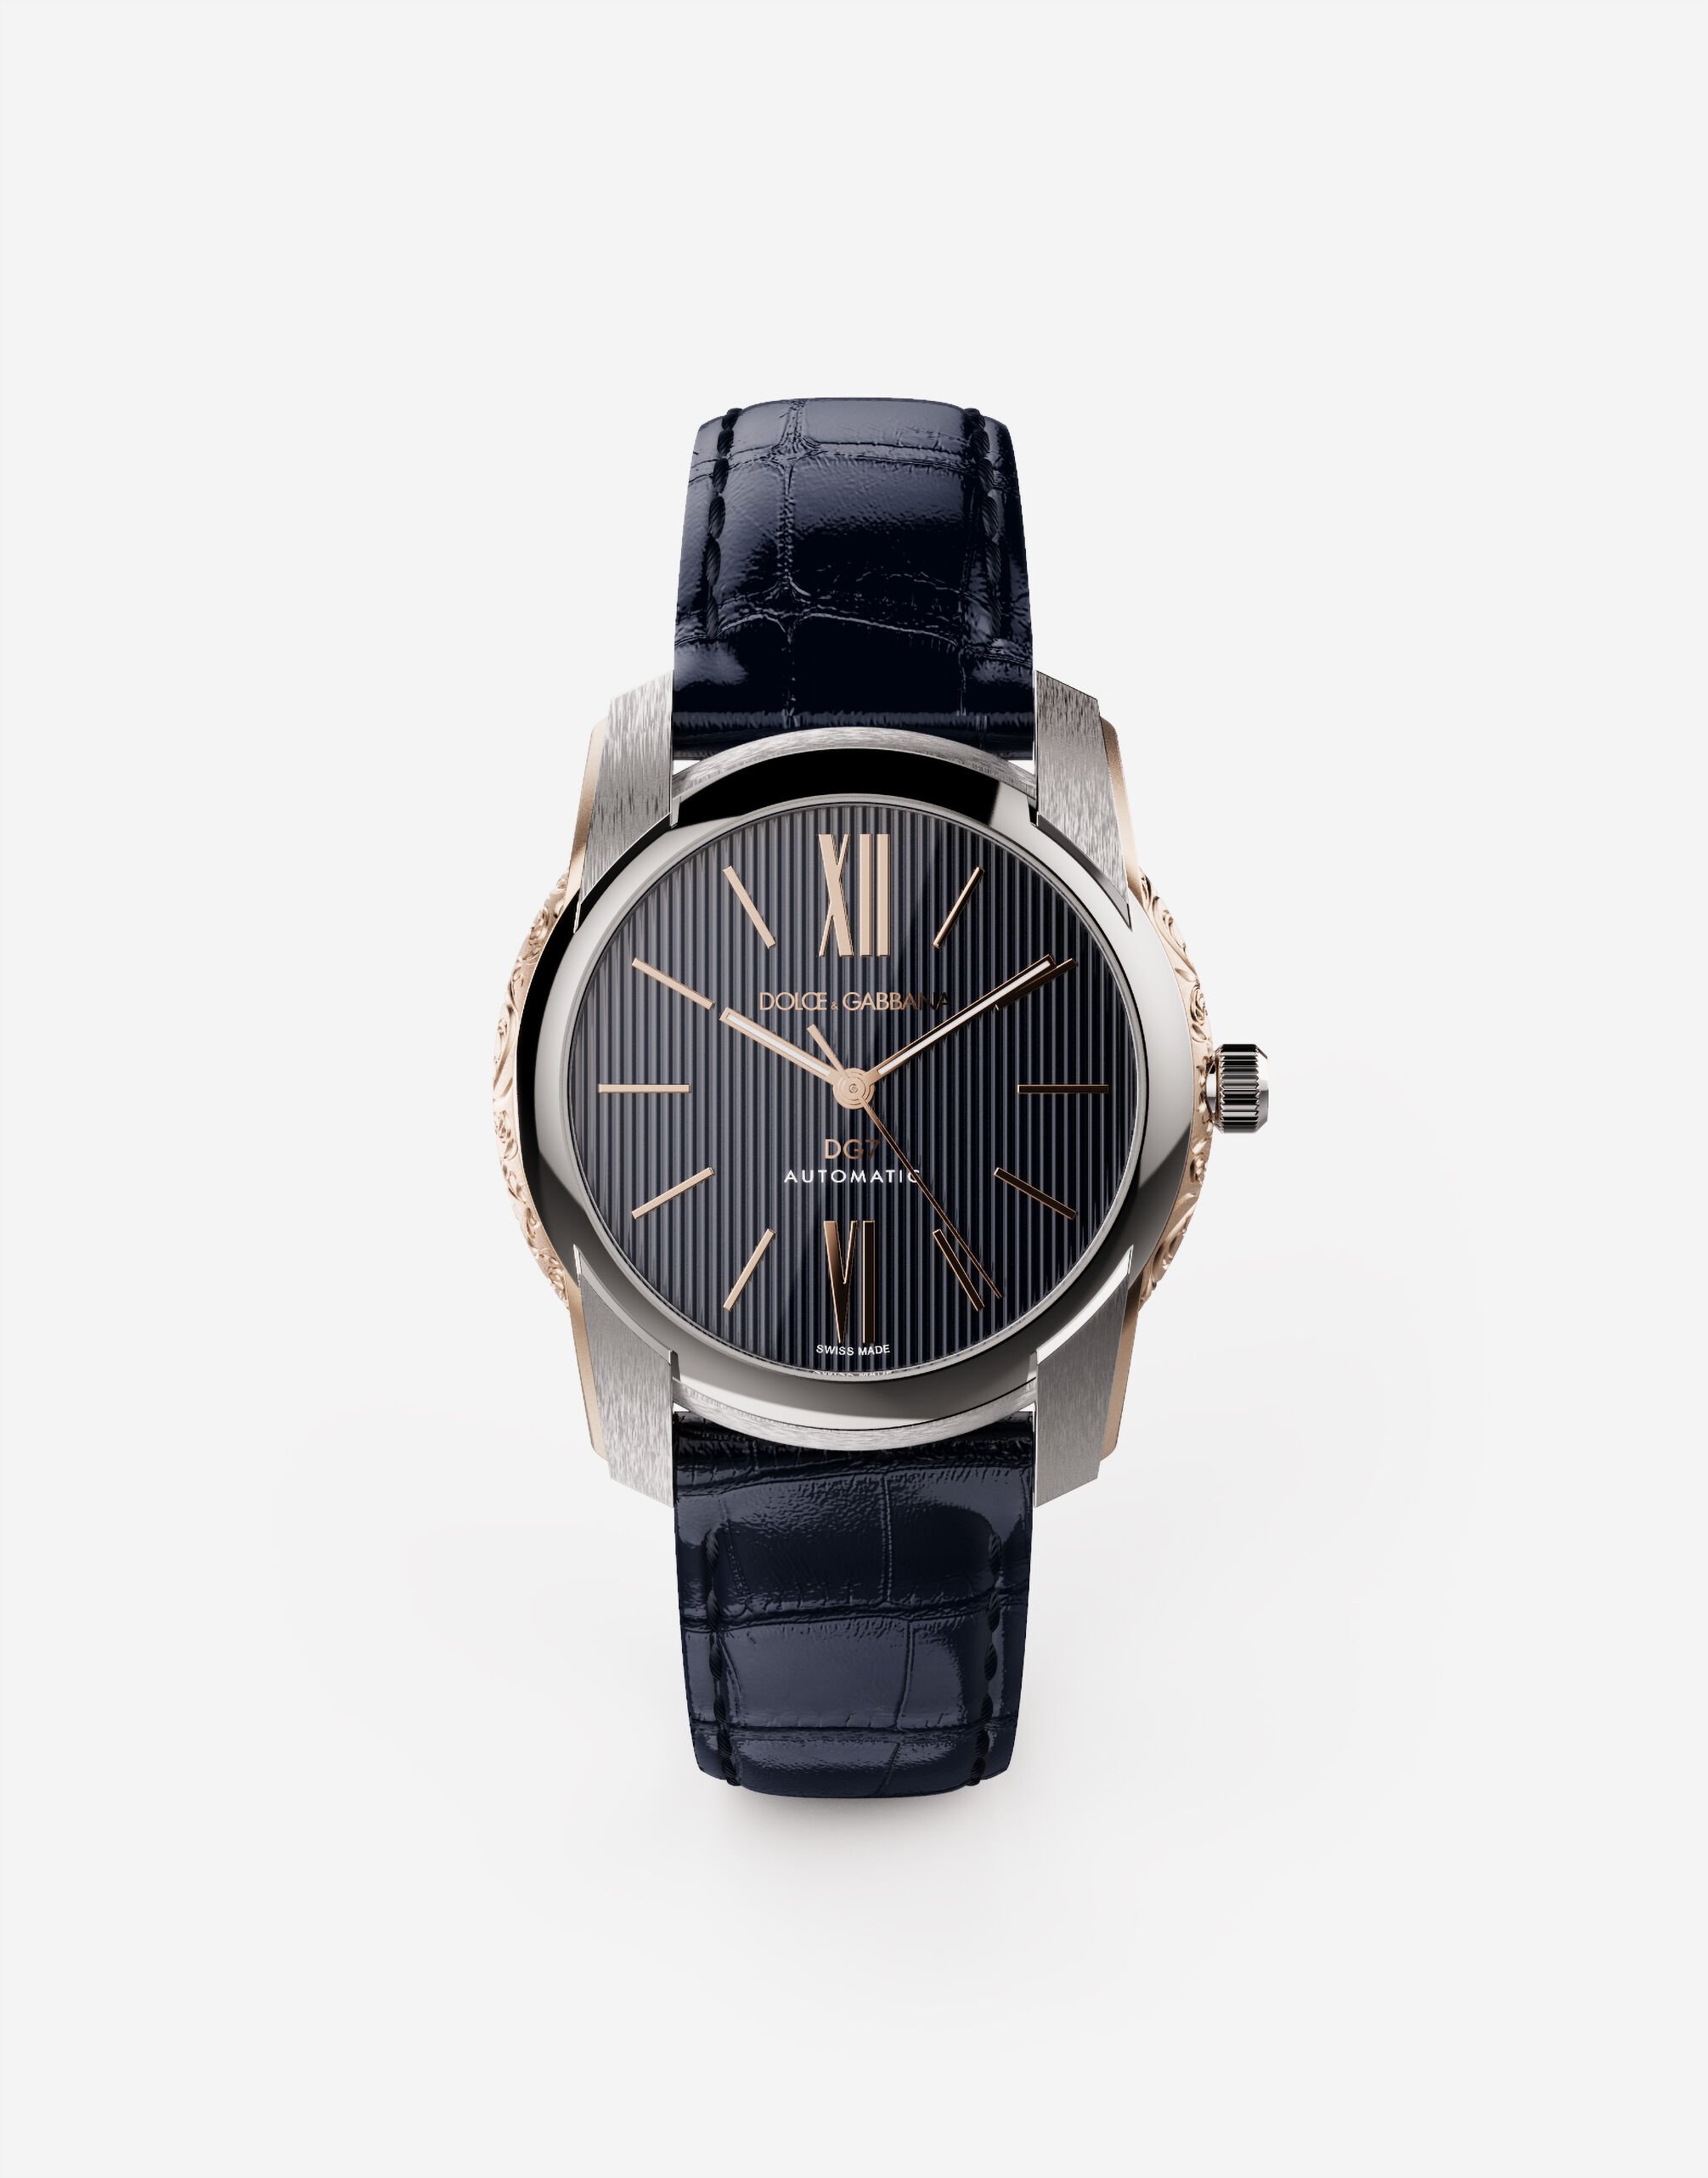 Dolce & Gabbana Reloj DG7 en acero con laterales grabados en oro Burdeos WWEEGGWW045